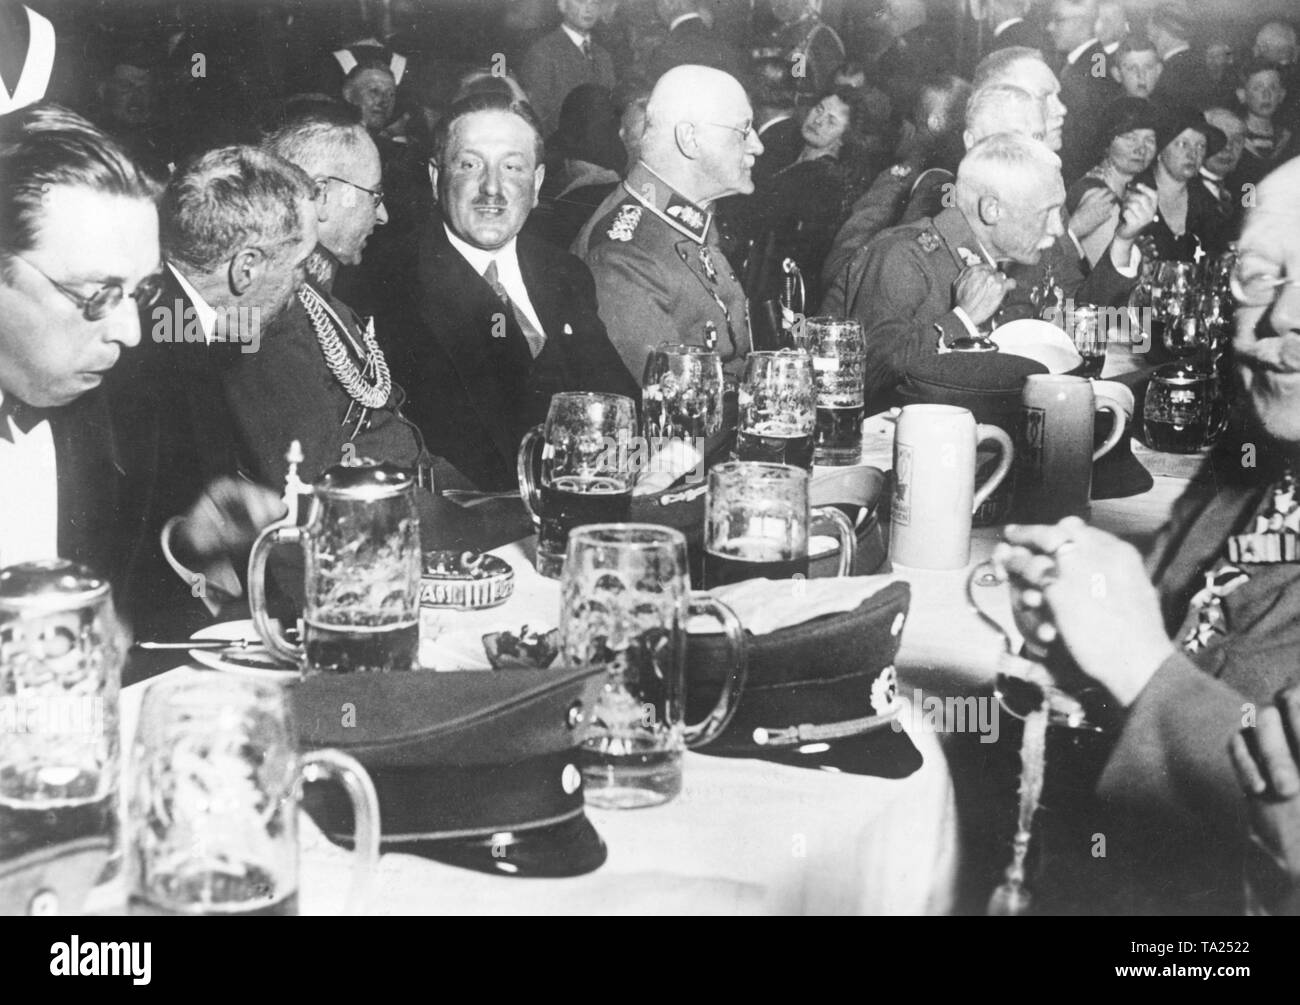 Bayerische Militär und Verbände Veterans' organisiert eine Gedenkfeier zum 6. Armee, mit der Rede von General Feeser im Zentrum der Veranstaltung. Hier wird die Tabelle der Generäle, mit allgemeinen Friedrichfranz Feeser (3. von links nach rechts), und, neben dem Mann in ziviler Kleidung, Prinz Alfons von Bayern und Kronprinz Rupprecht von Bayern (Biegen). Stockfoto